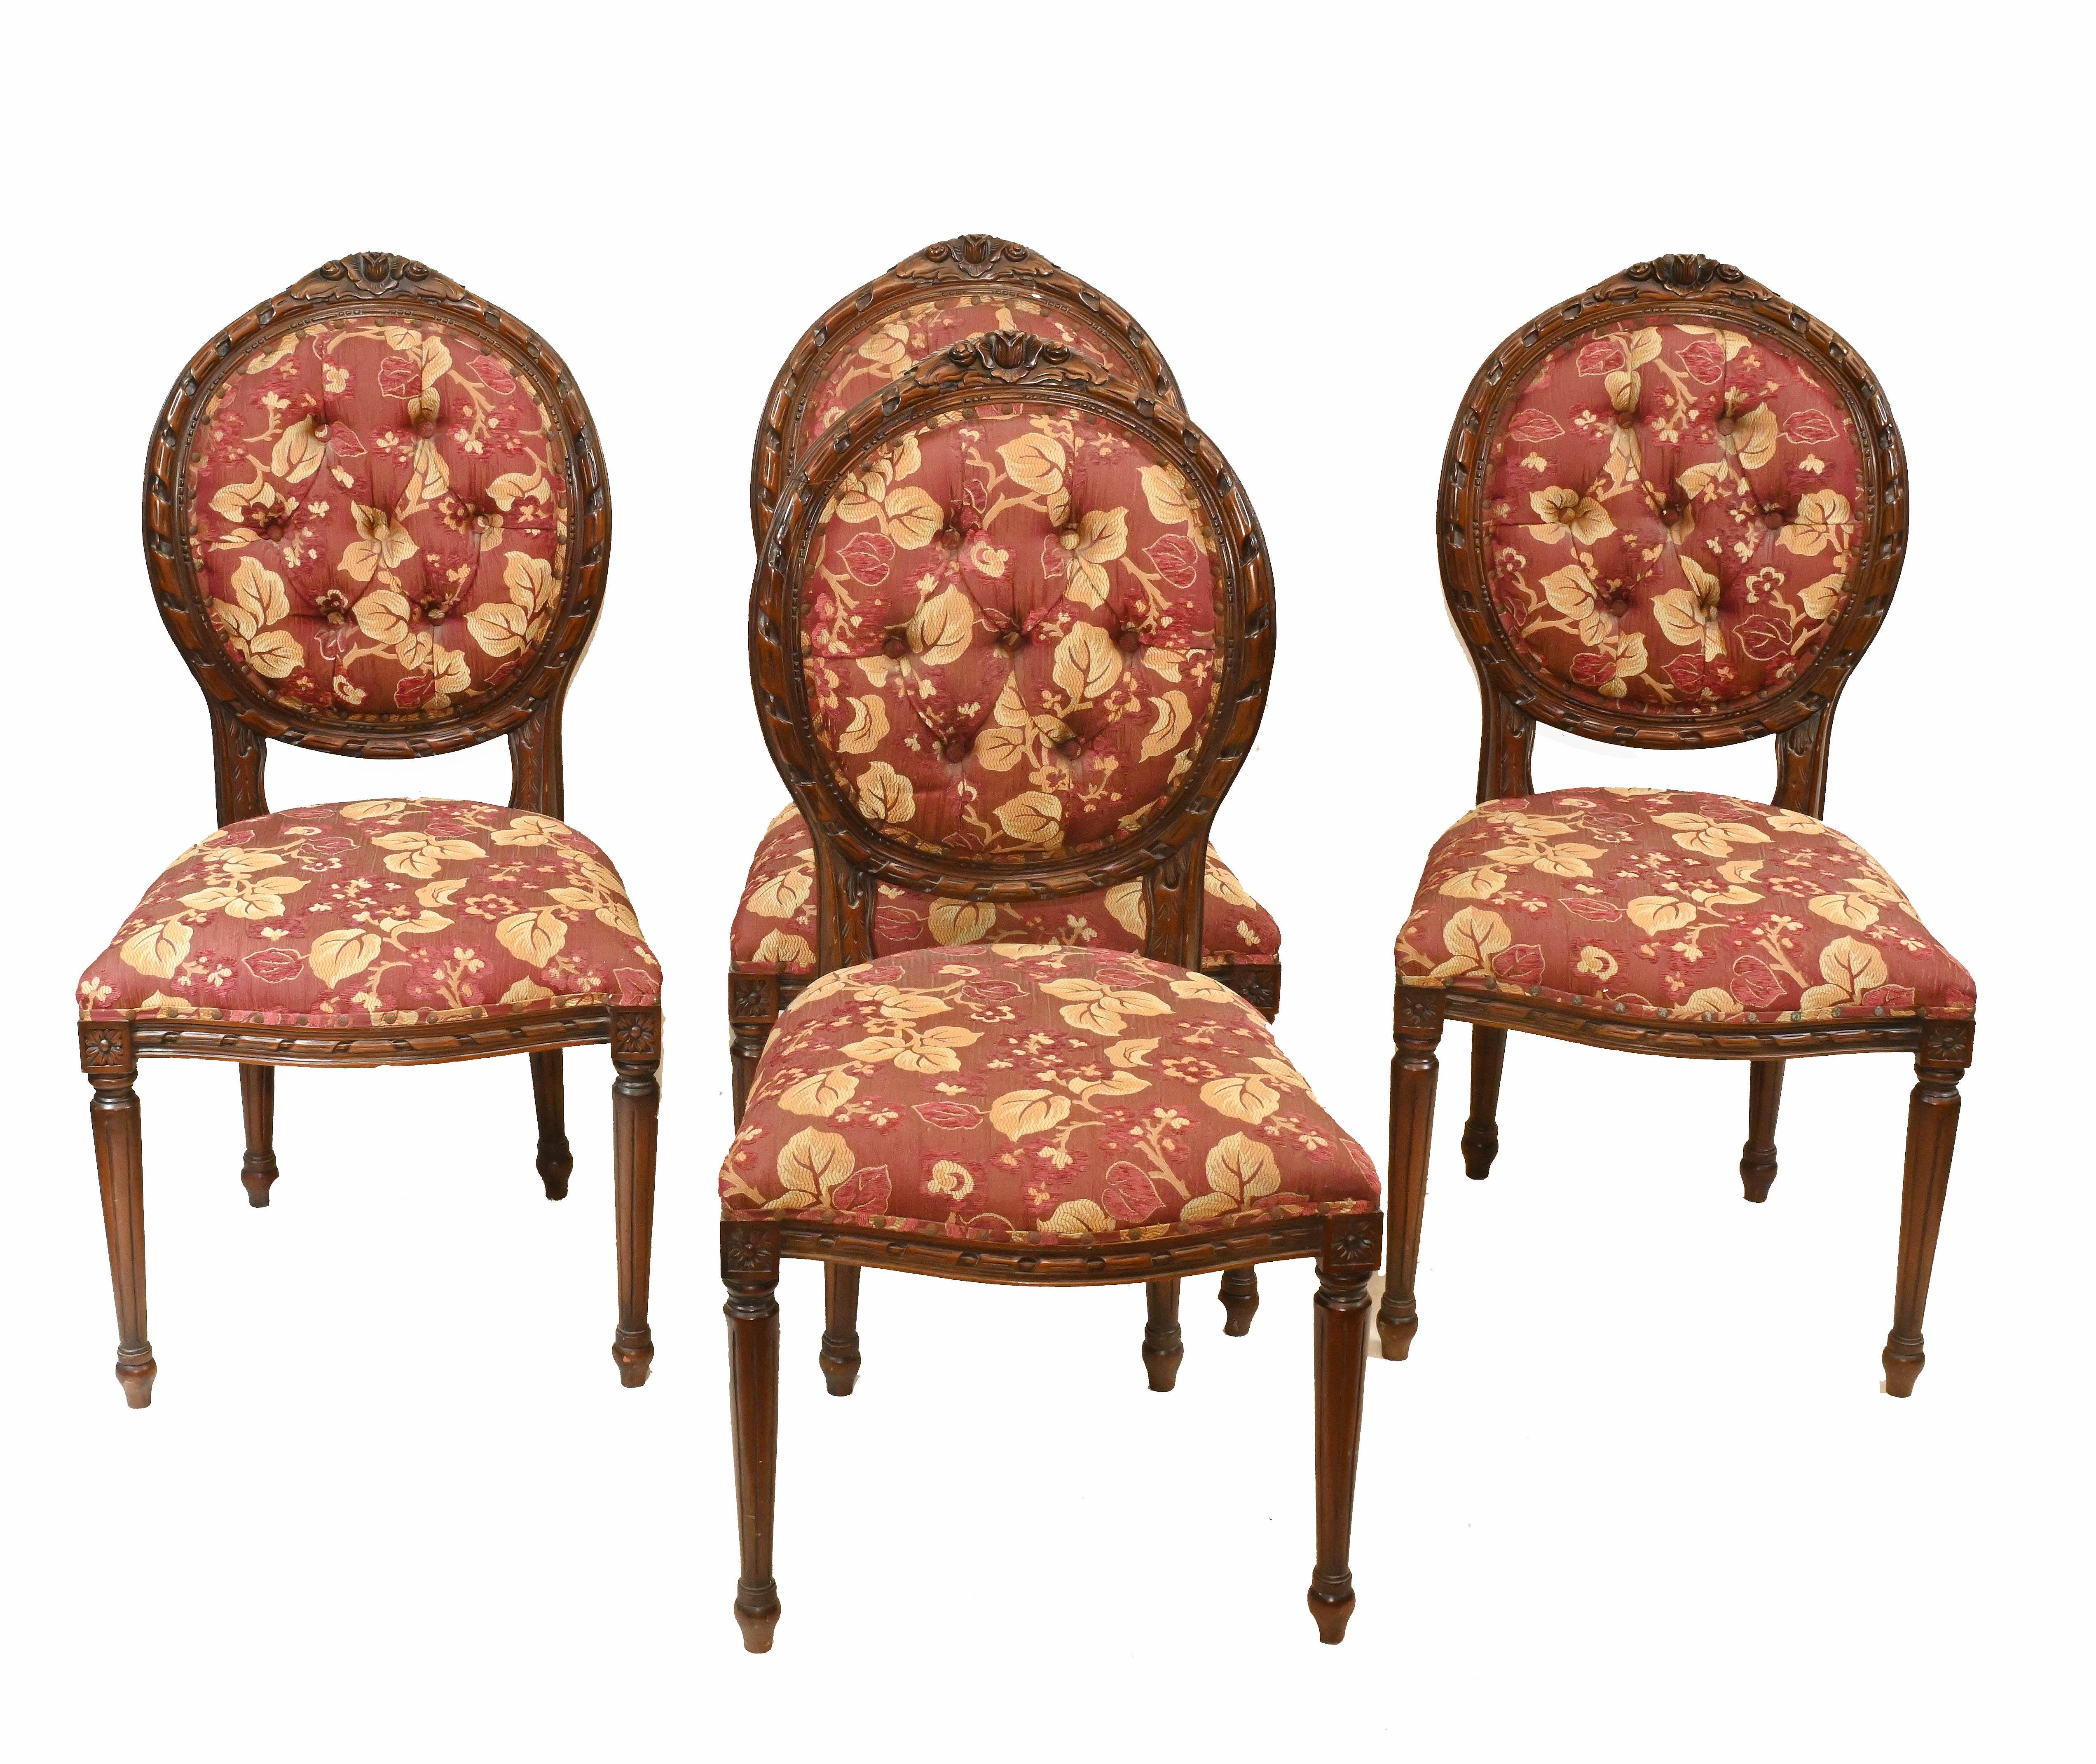 Ensemble rafraîchissant de quatre chaises de salle à manger victoriennes en acajou
Nices motifs floraux sur un tissu accrocheur
Confortable pour s'asseoir, cet ensemble date d'environ 1880
Proposé en très bon état, prêt à être utilisé à la maison